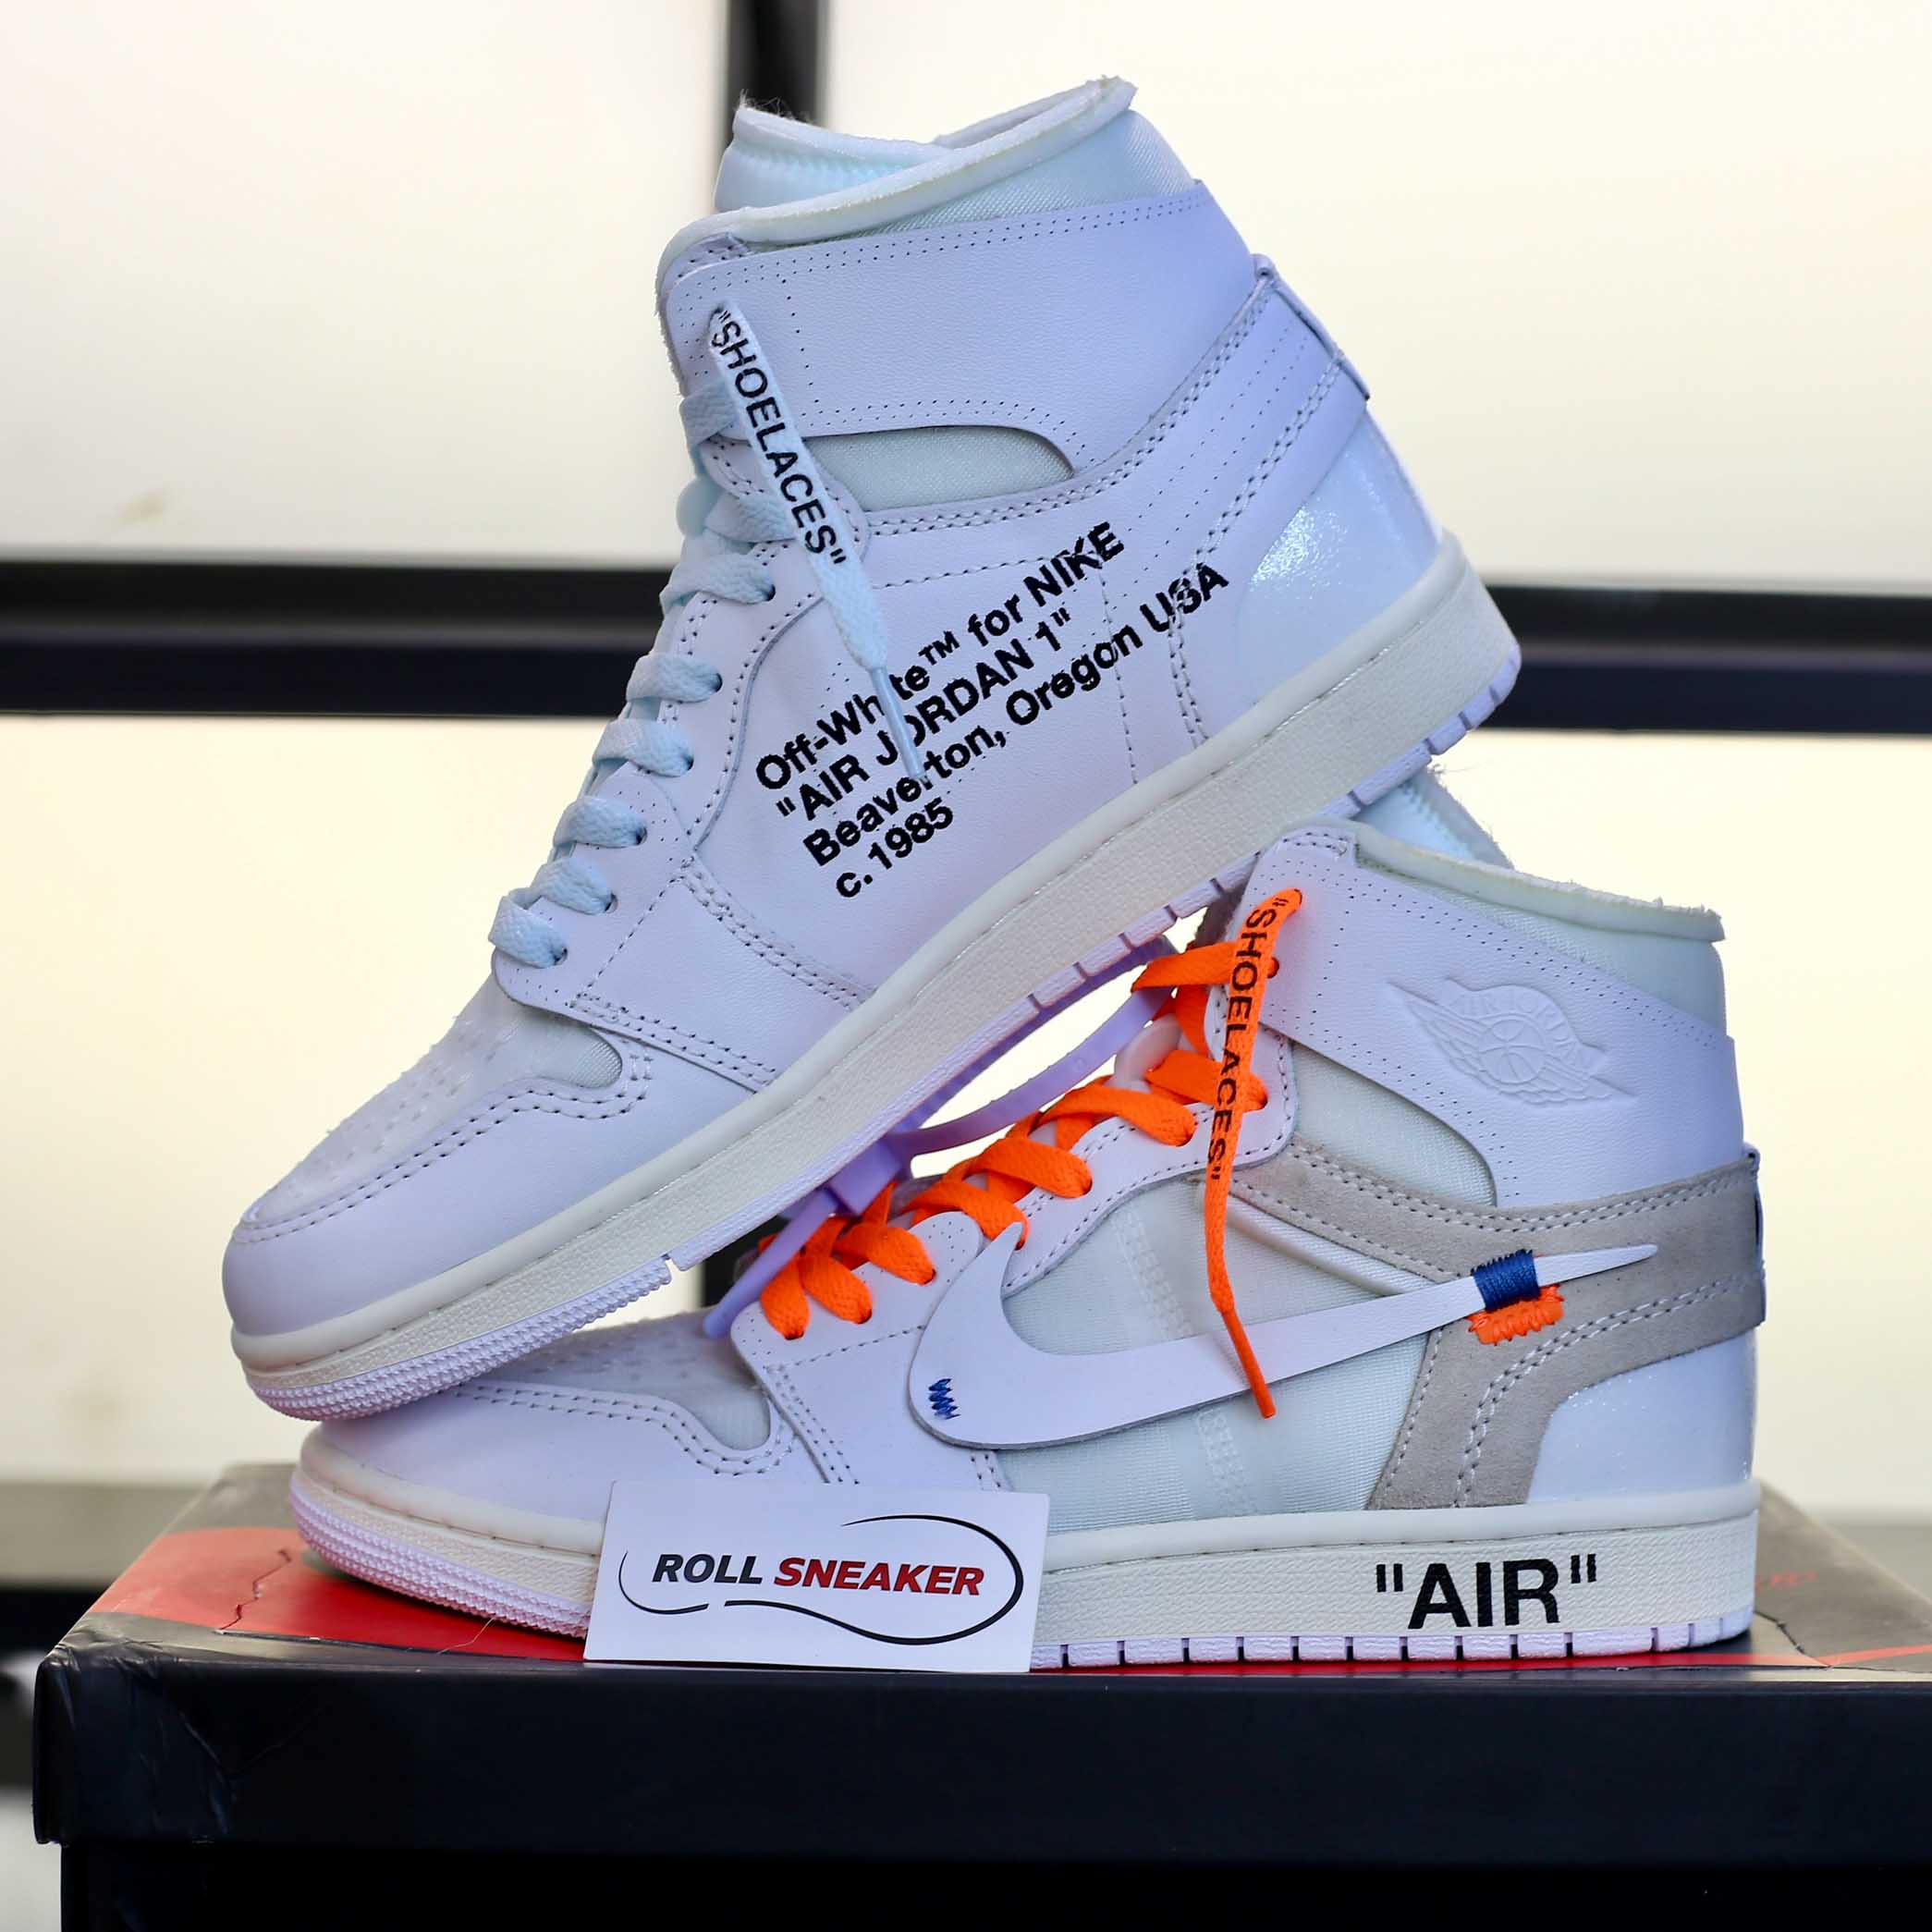 Giày Nike Air Jordan 1 Nrg Off White Like Auth rep 1:1 - Roll Sneaker